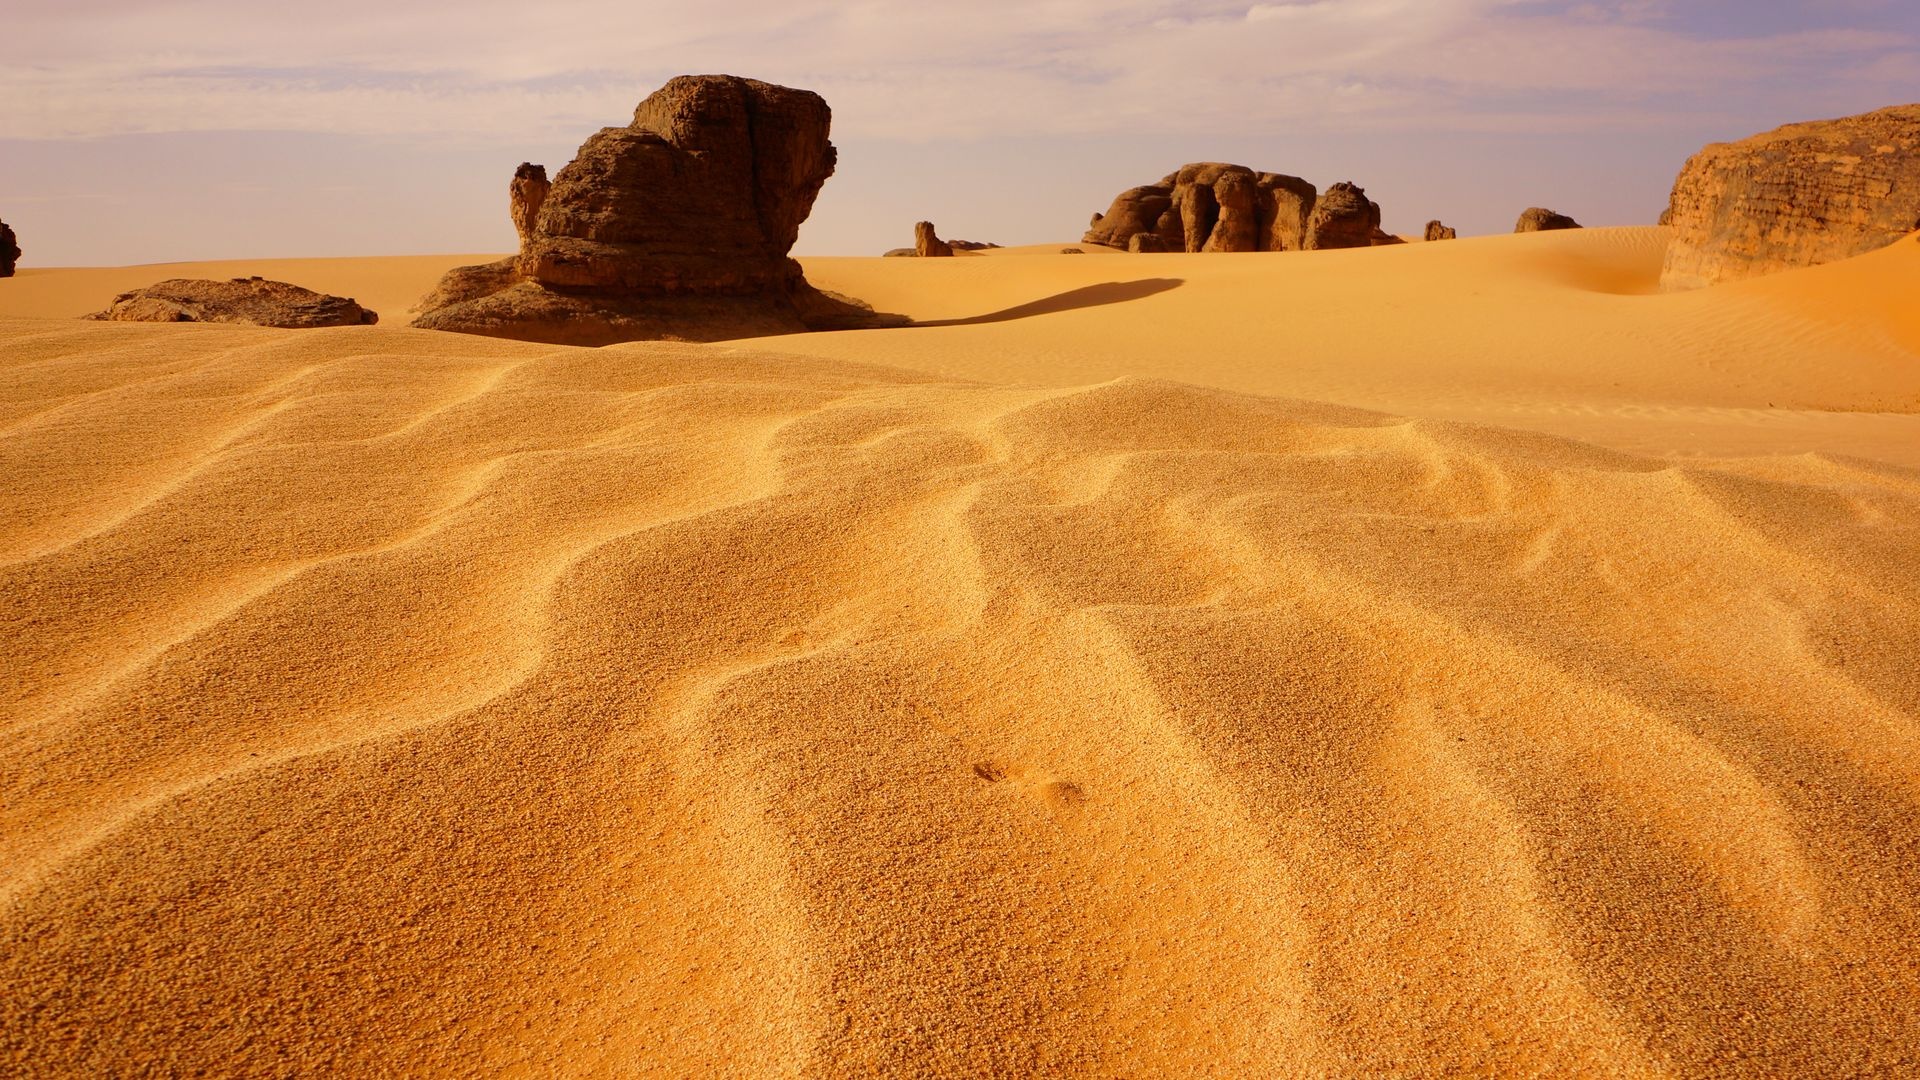 Algeria Sahara desert, Sand dune, Rocks, 1920x1080 Full HD Desktop